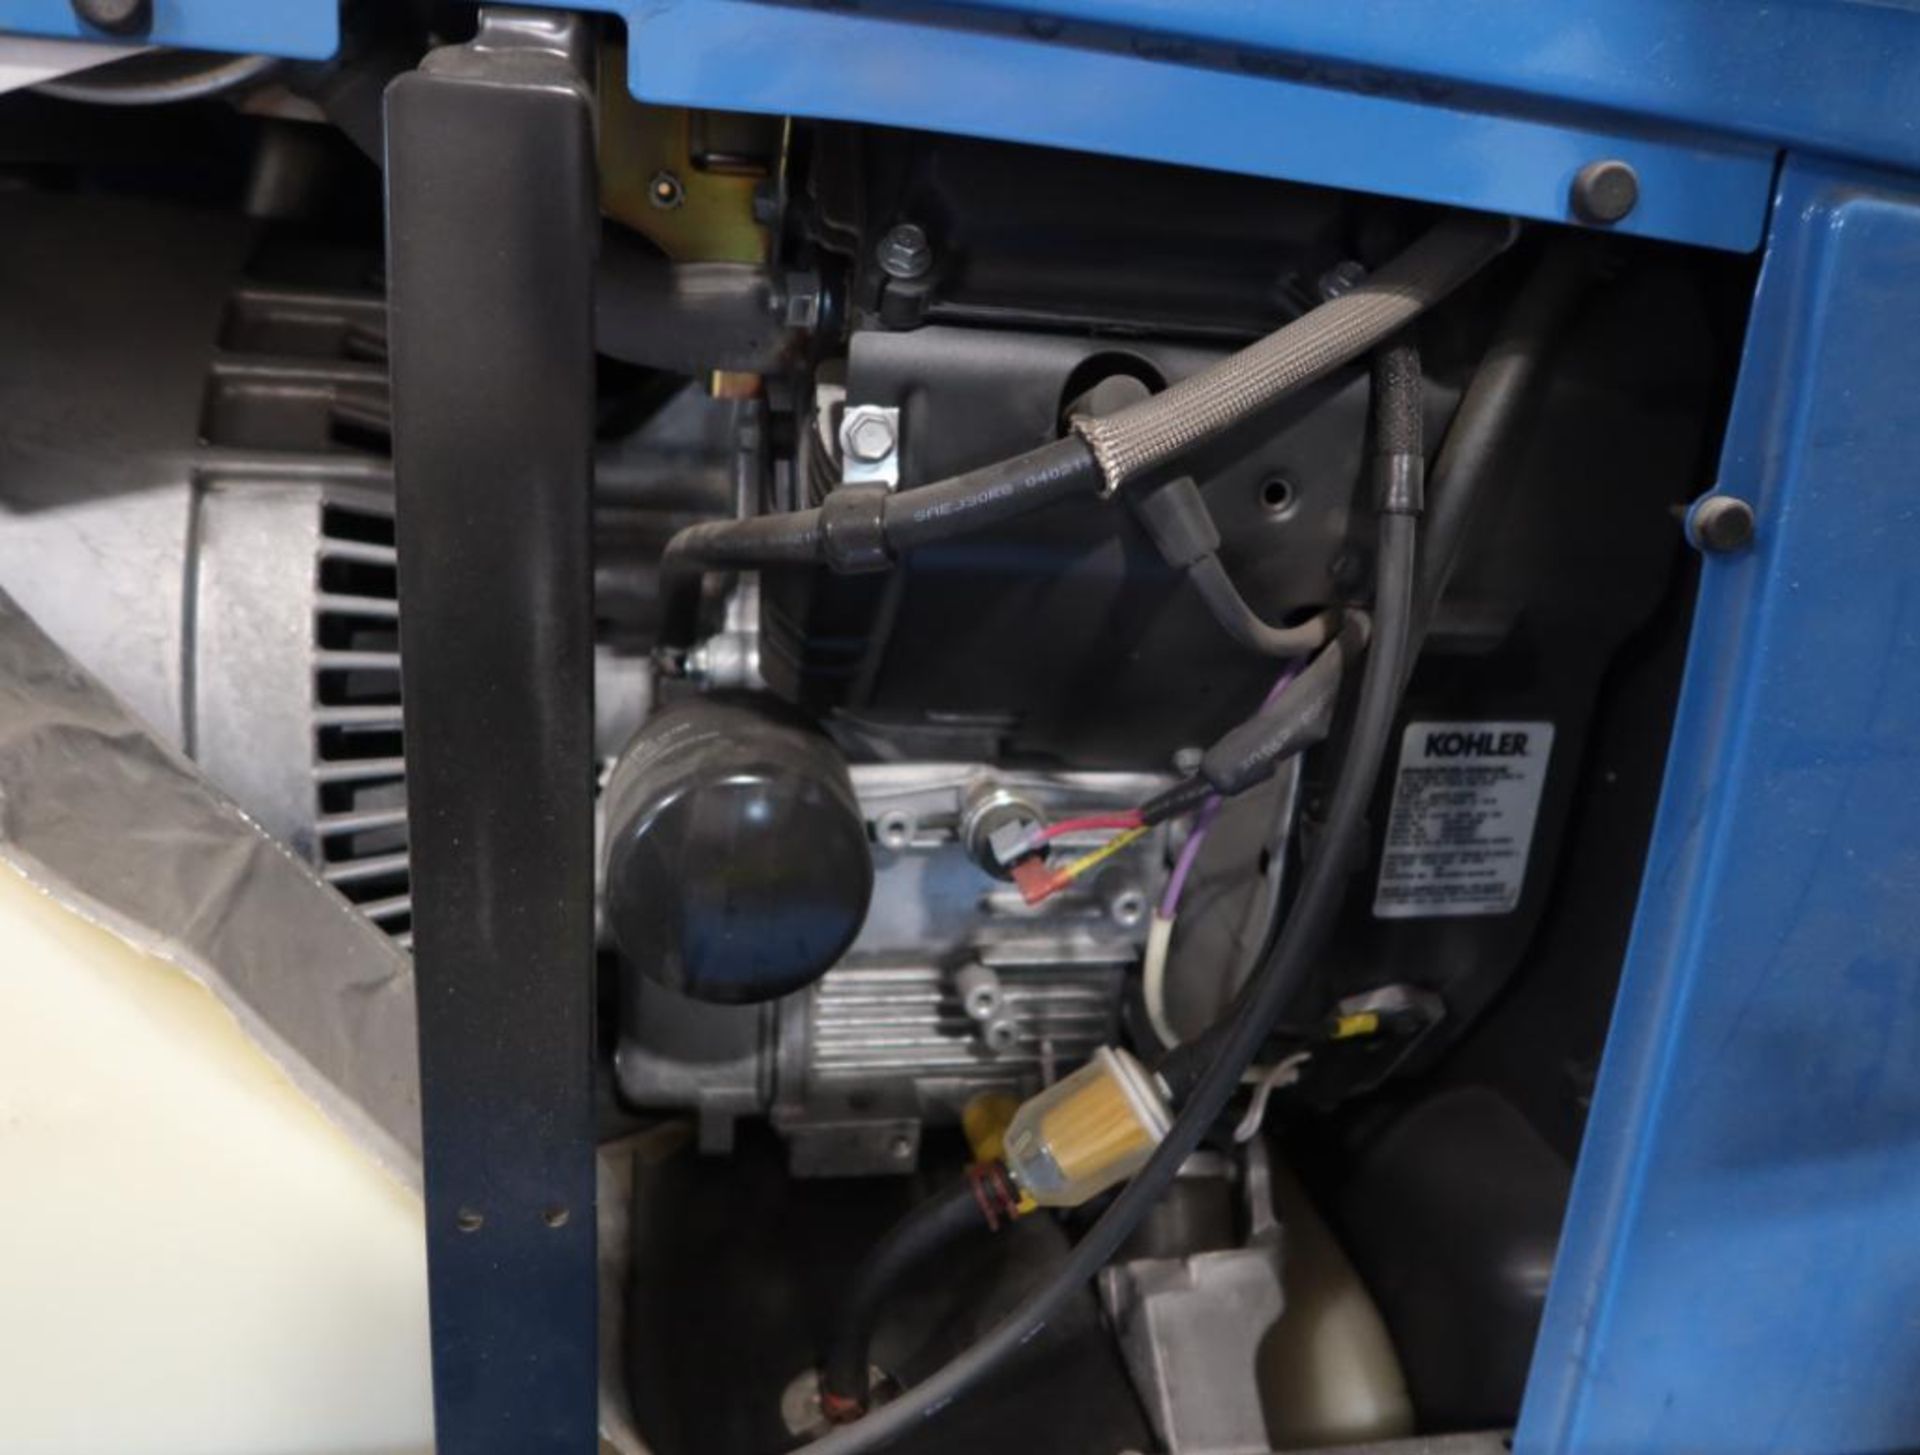 Miller Bobcat 225 Welder Power Source/ 11,000 Watt Gas Generator - Image 4 of 6